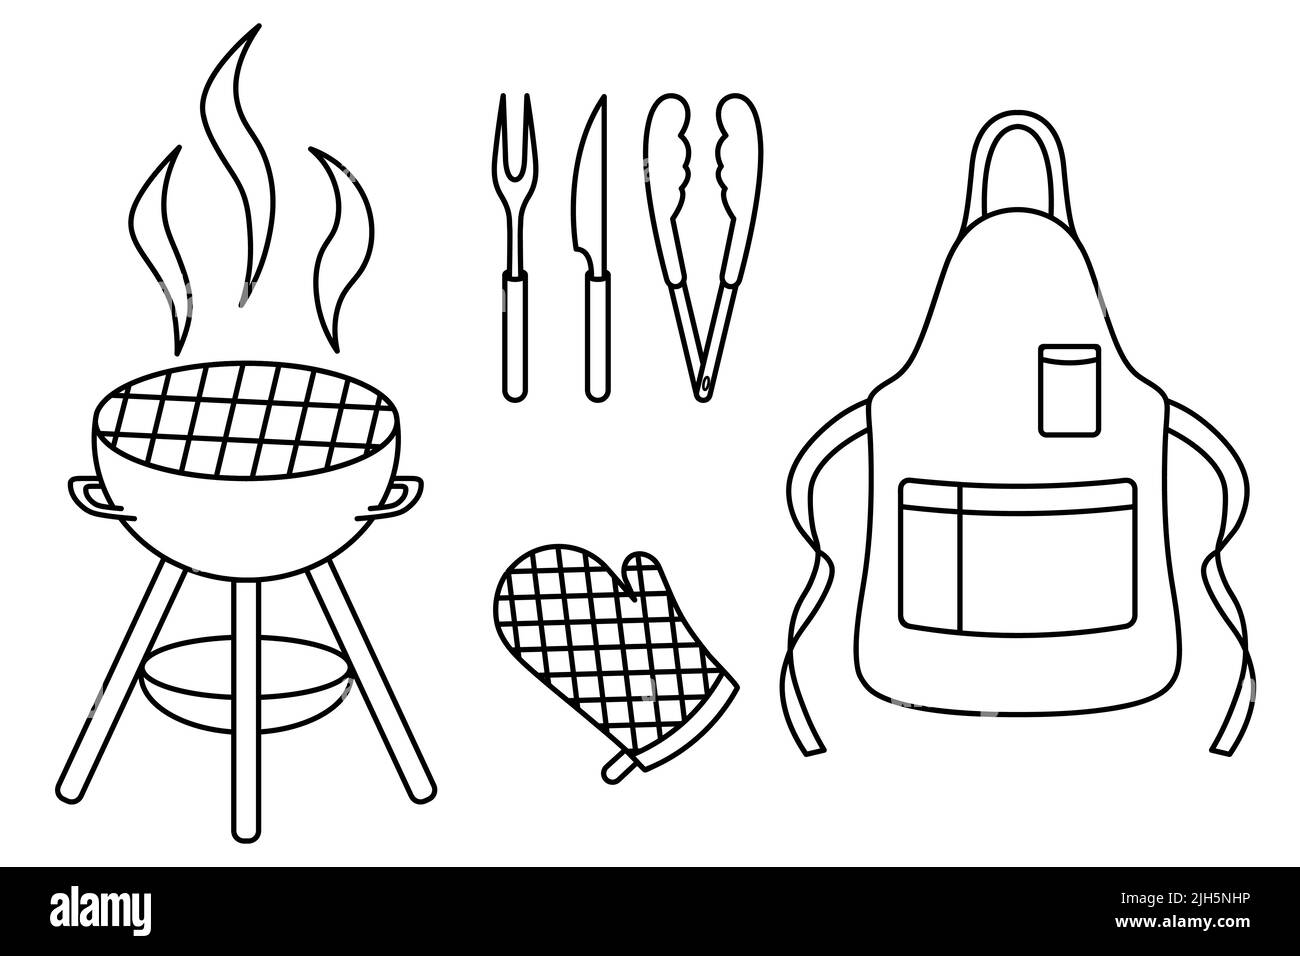 Un ensemble d'outils et de combinaisons pour cuisiner un barbecue. Esquisse. Illustration vectorielle. Coloriage. Contour sur arrière-plan isolé. Style Doodle. Illustration de Vecteur